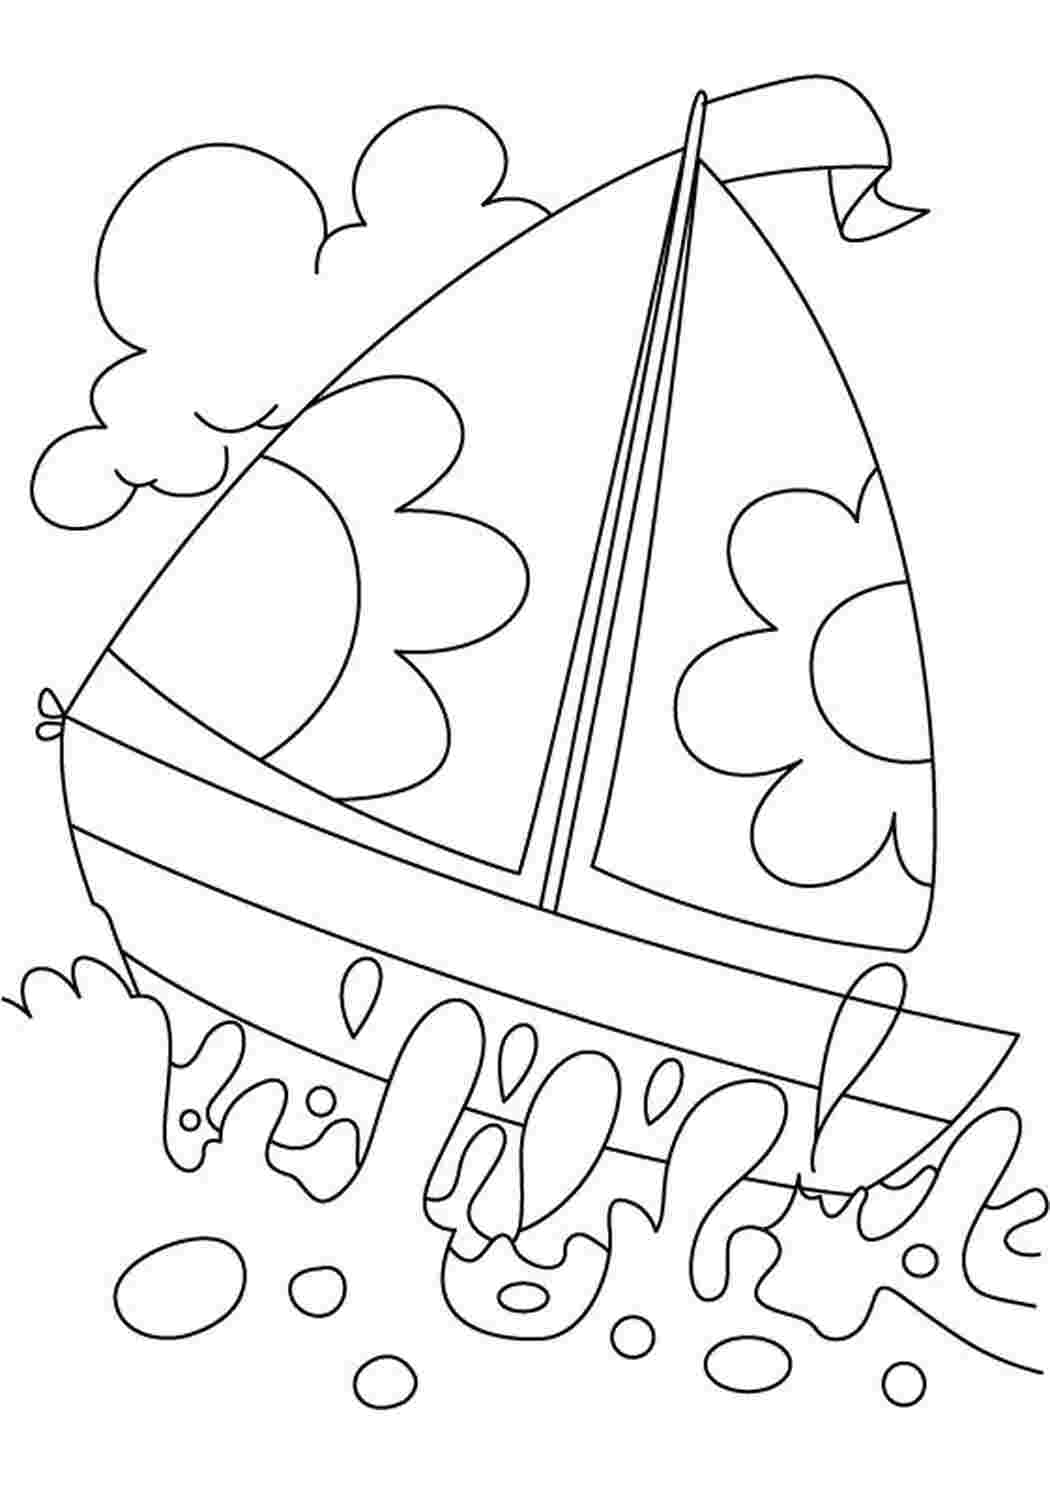 Раскраски картинки на рабочий стол онлайн Лодочка с парусами в цветочек, море, волны Раскраски для мальчиков